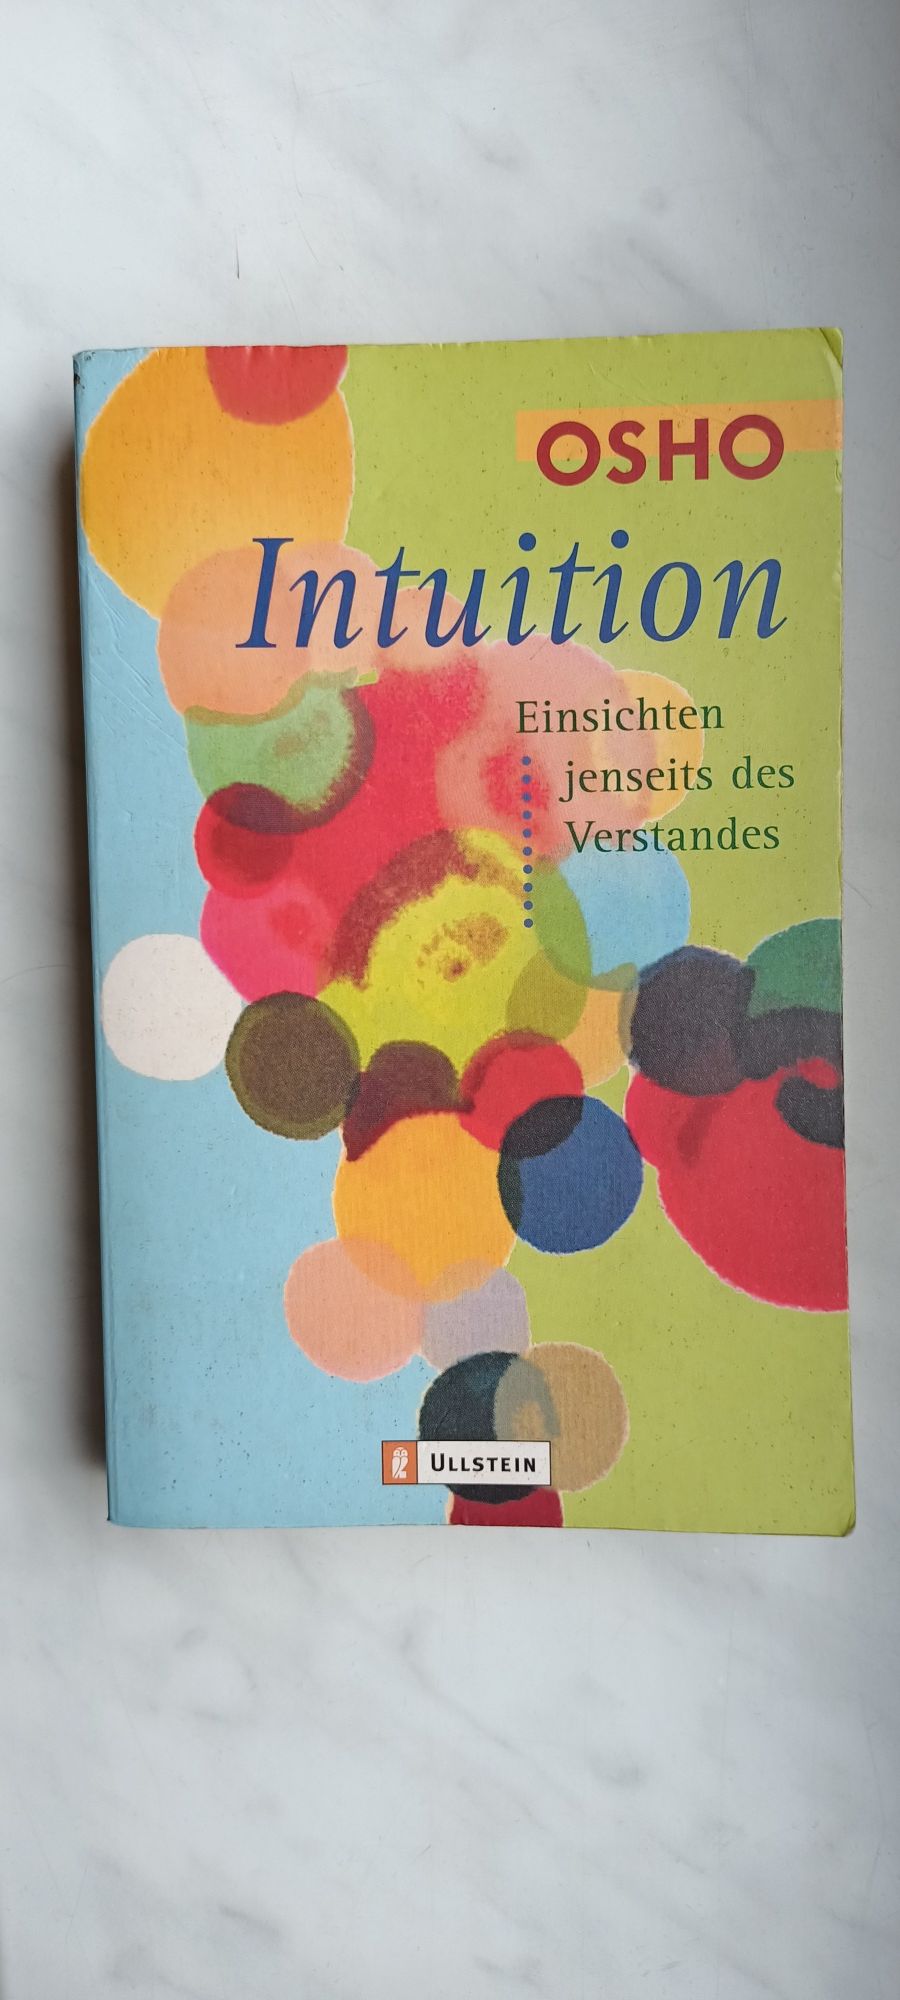 Osho Intuition książka po niemiecku niemiecki Intuicja samorozwój